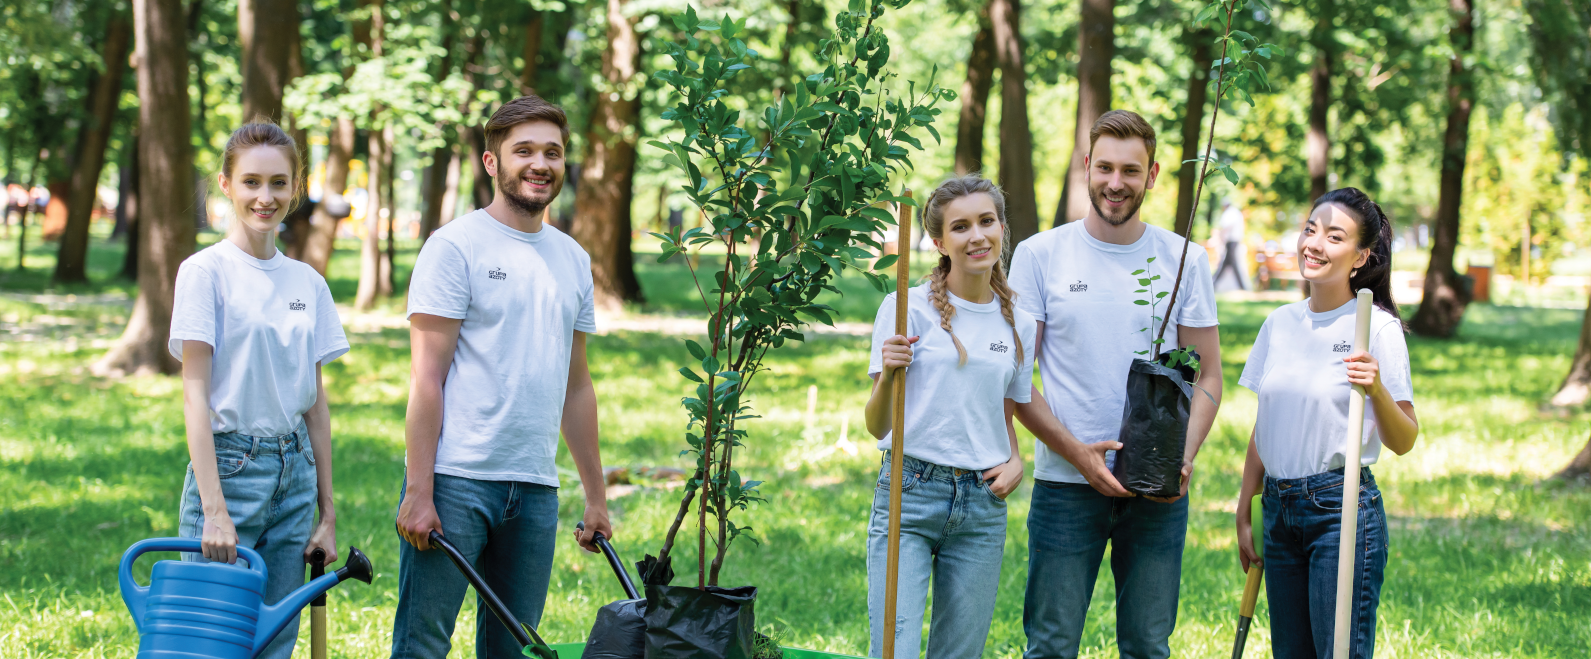 Grupa Azoty’s Employee Volunteering Programme winning initiatives